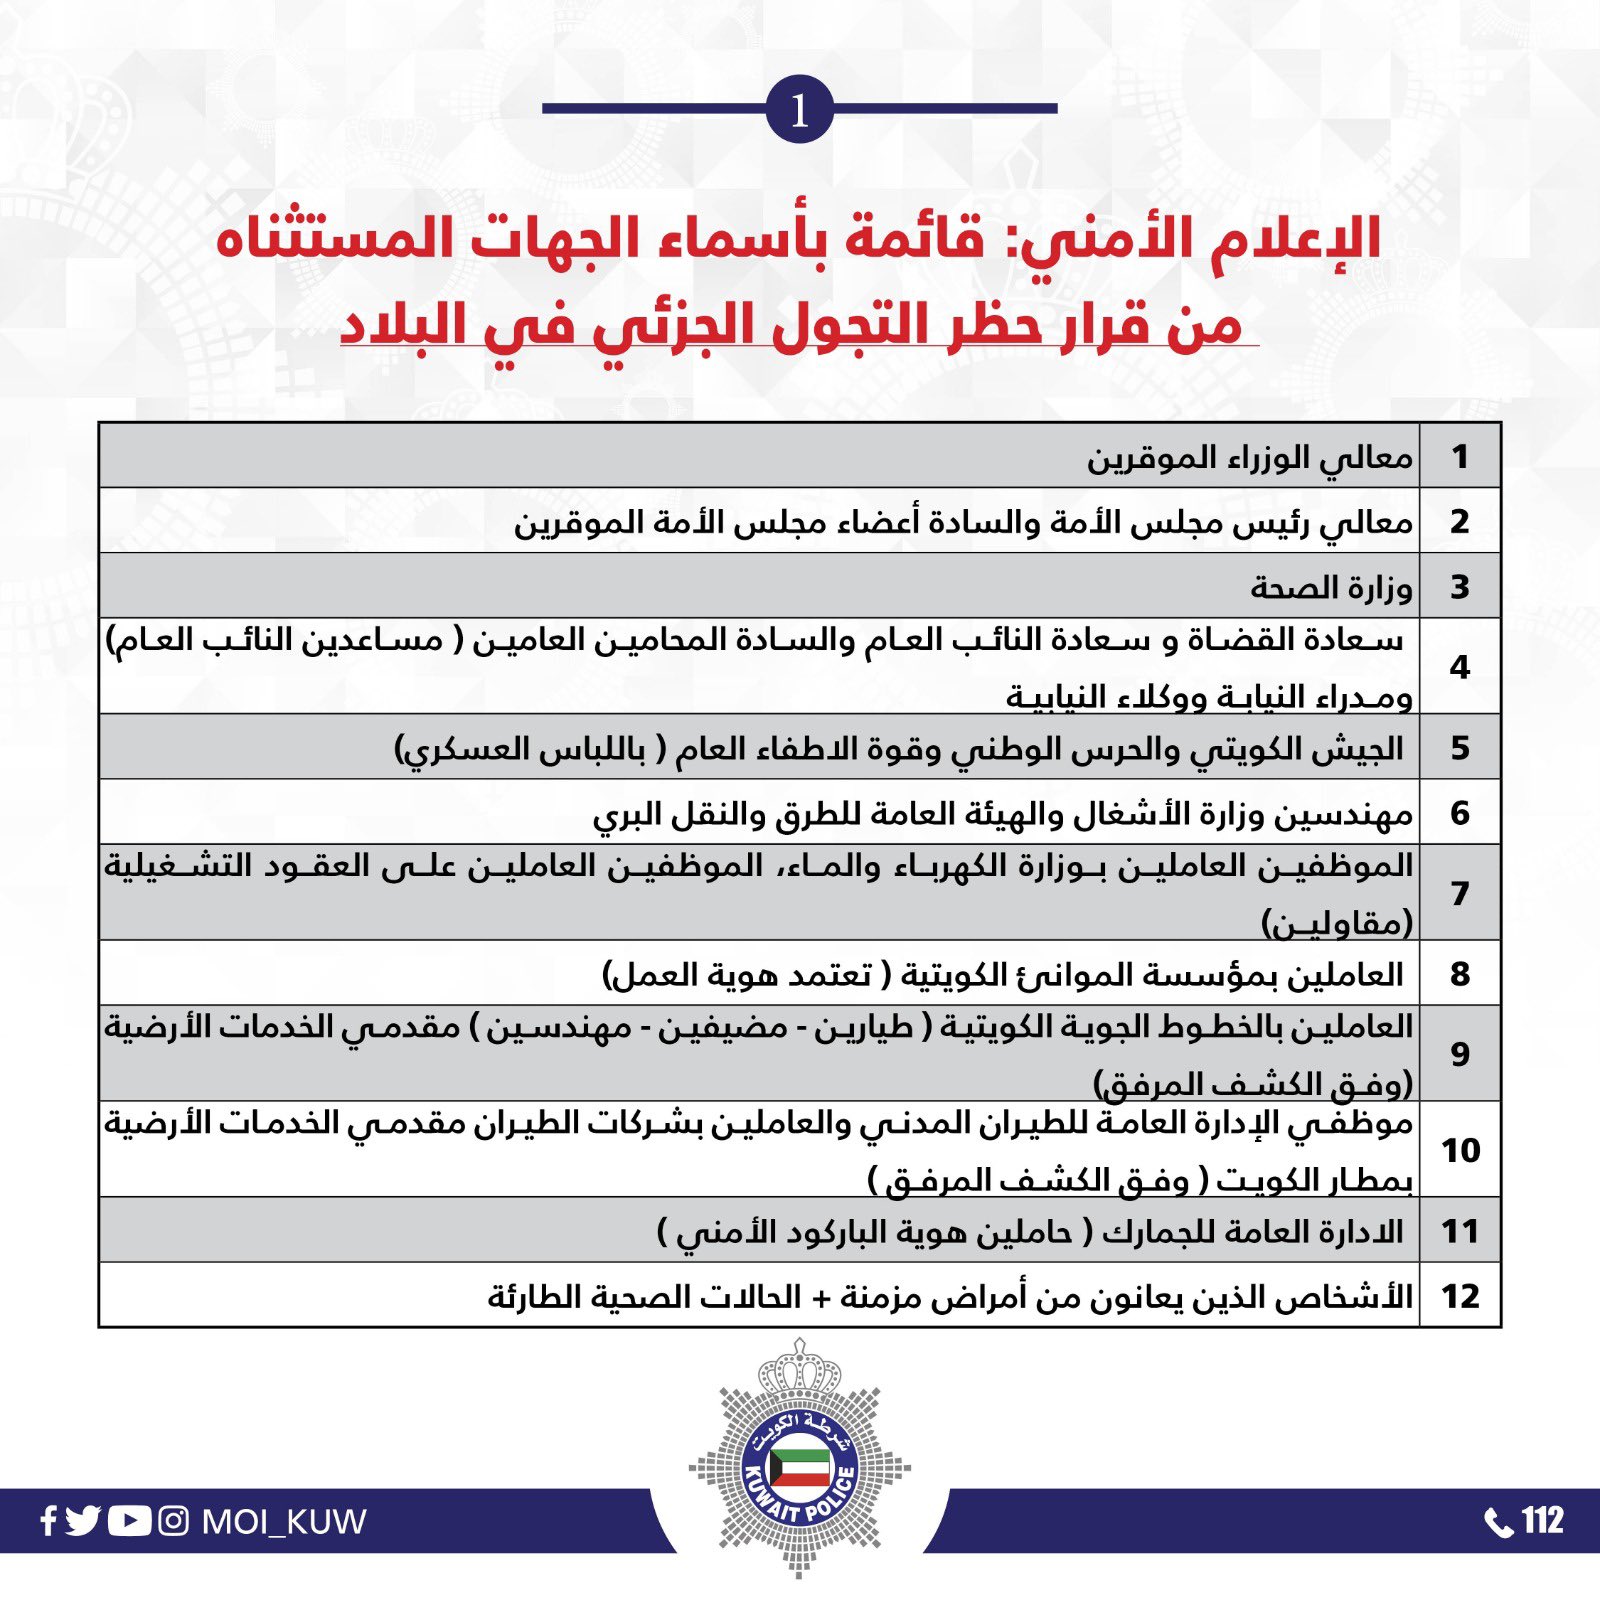 الفئات المستثناة من الحظر الجزئي في الكويت